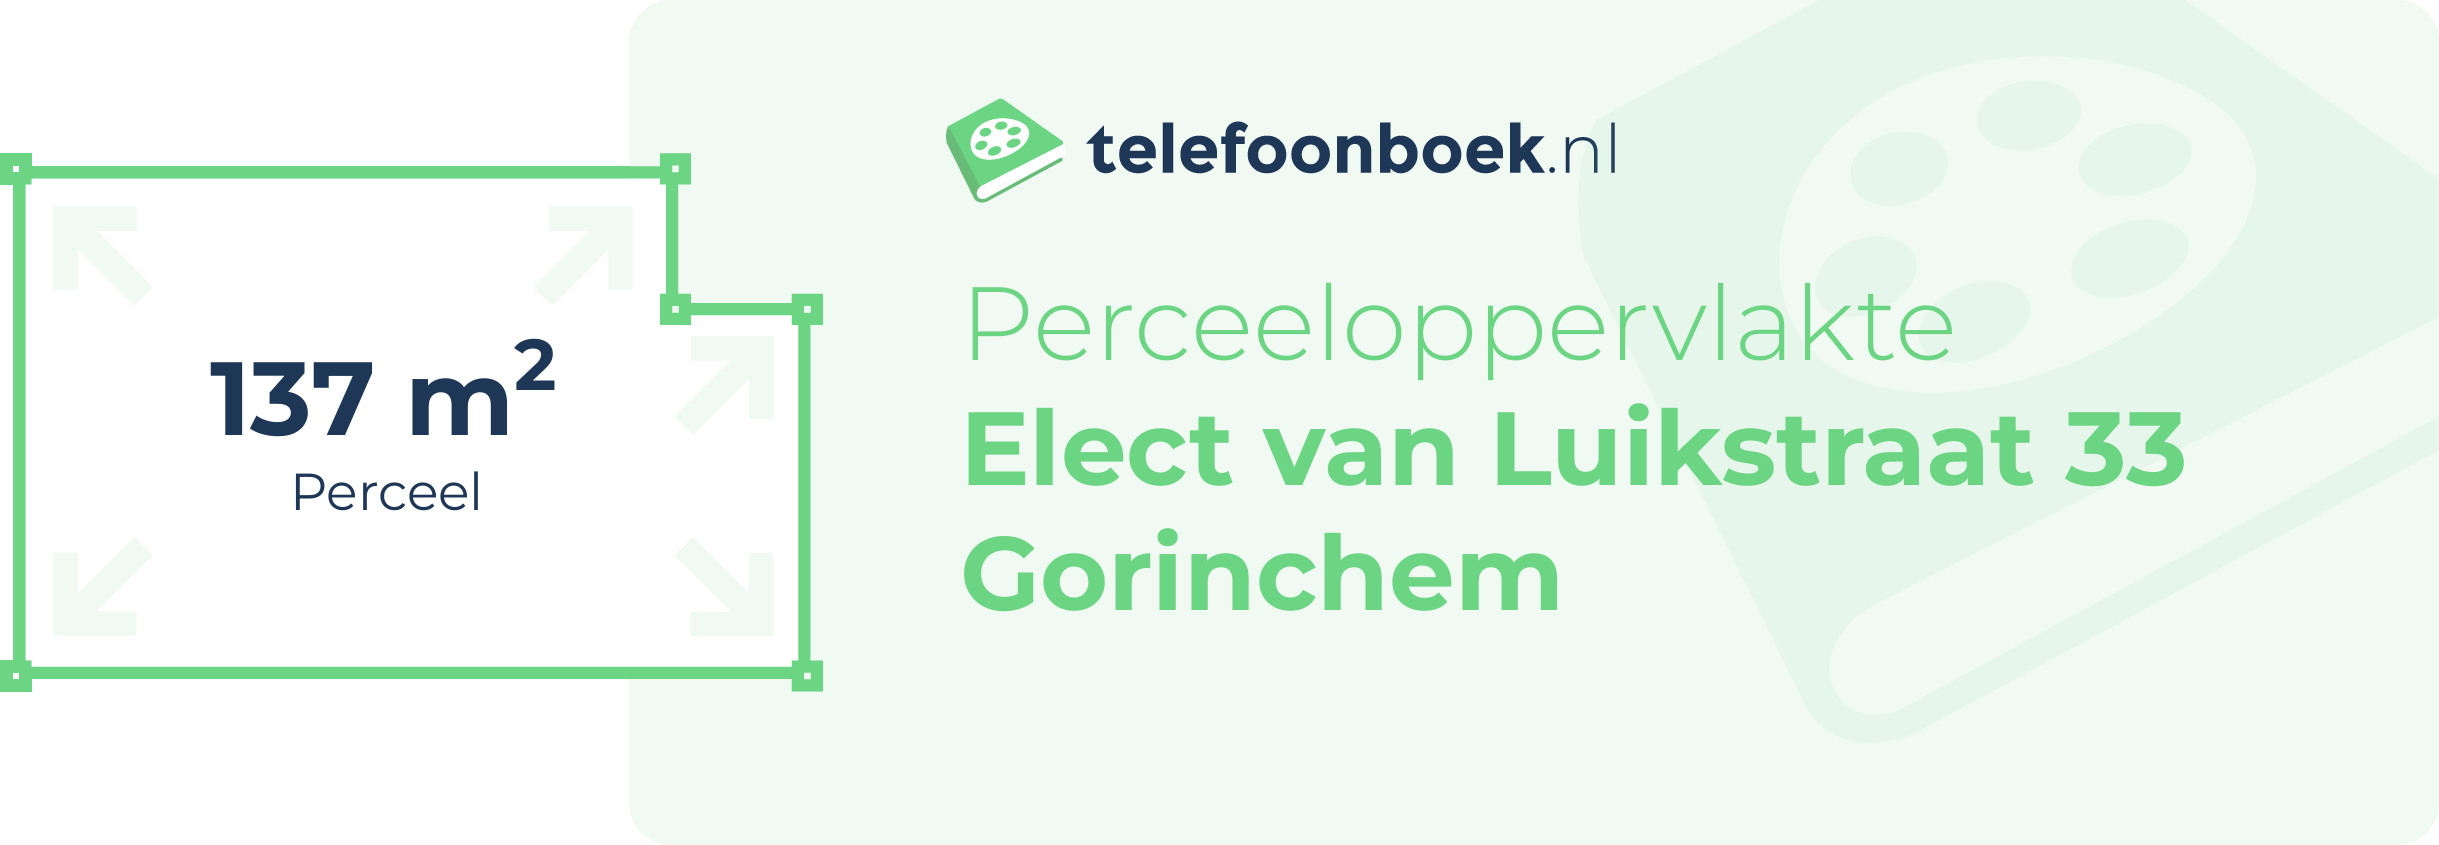 Perceeloppervlakte Elect Van Luikstraat 33 Gorinchem